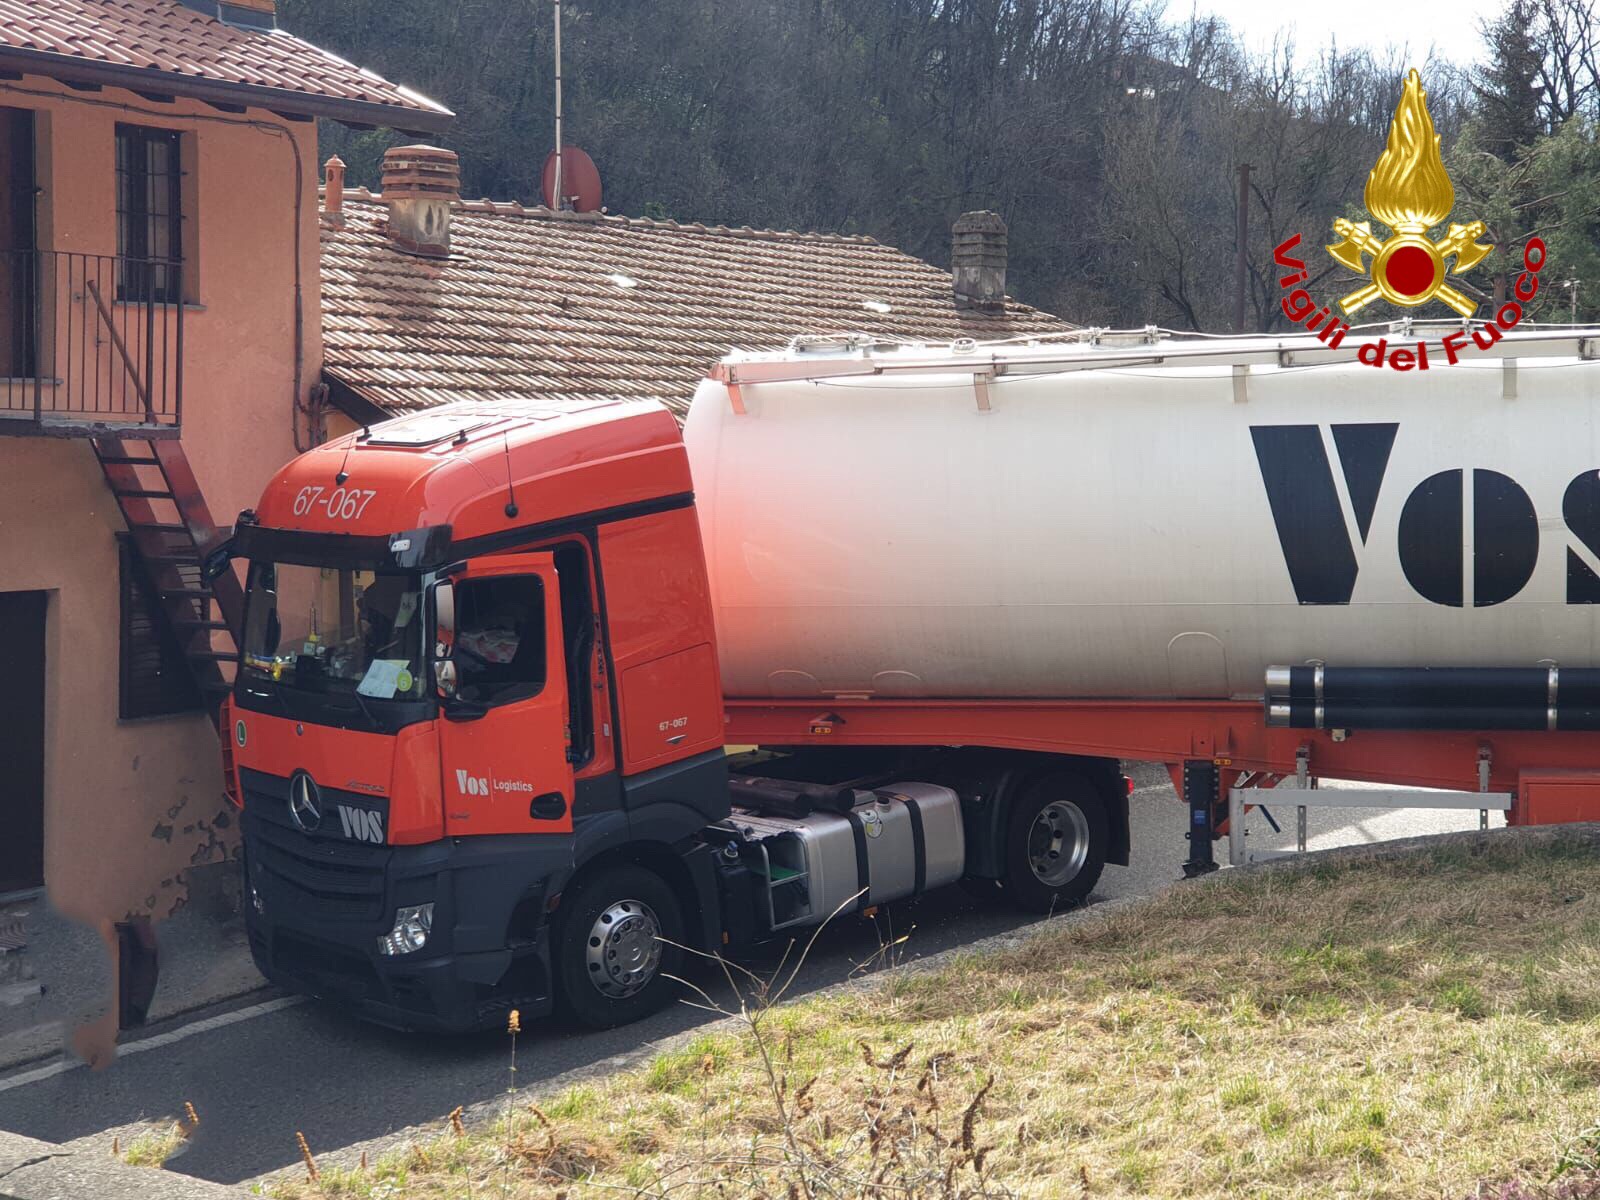 Varese, intervento dei Vigili del Fuoco per rimuovere un autoarticolato